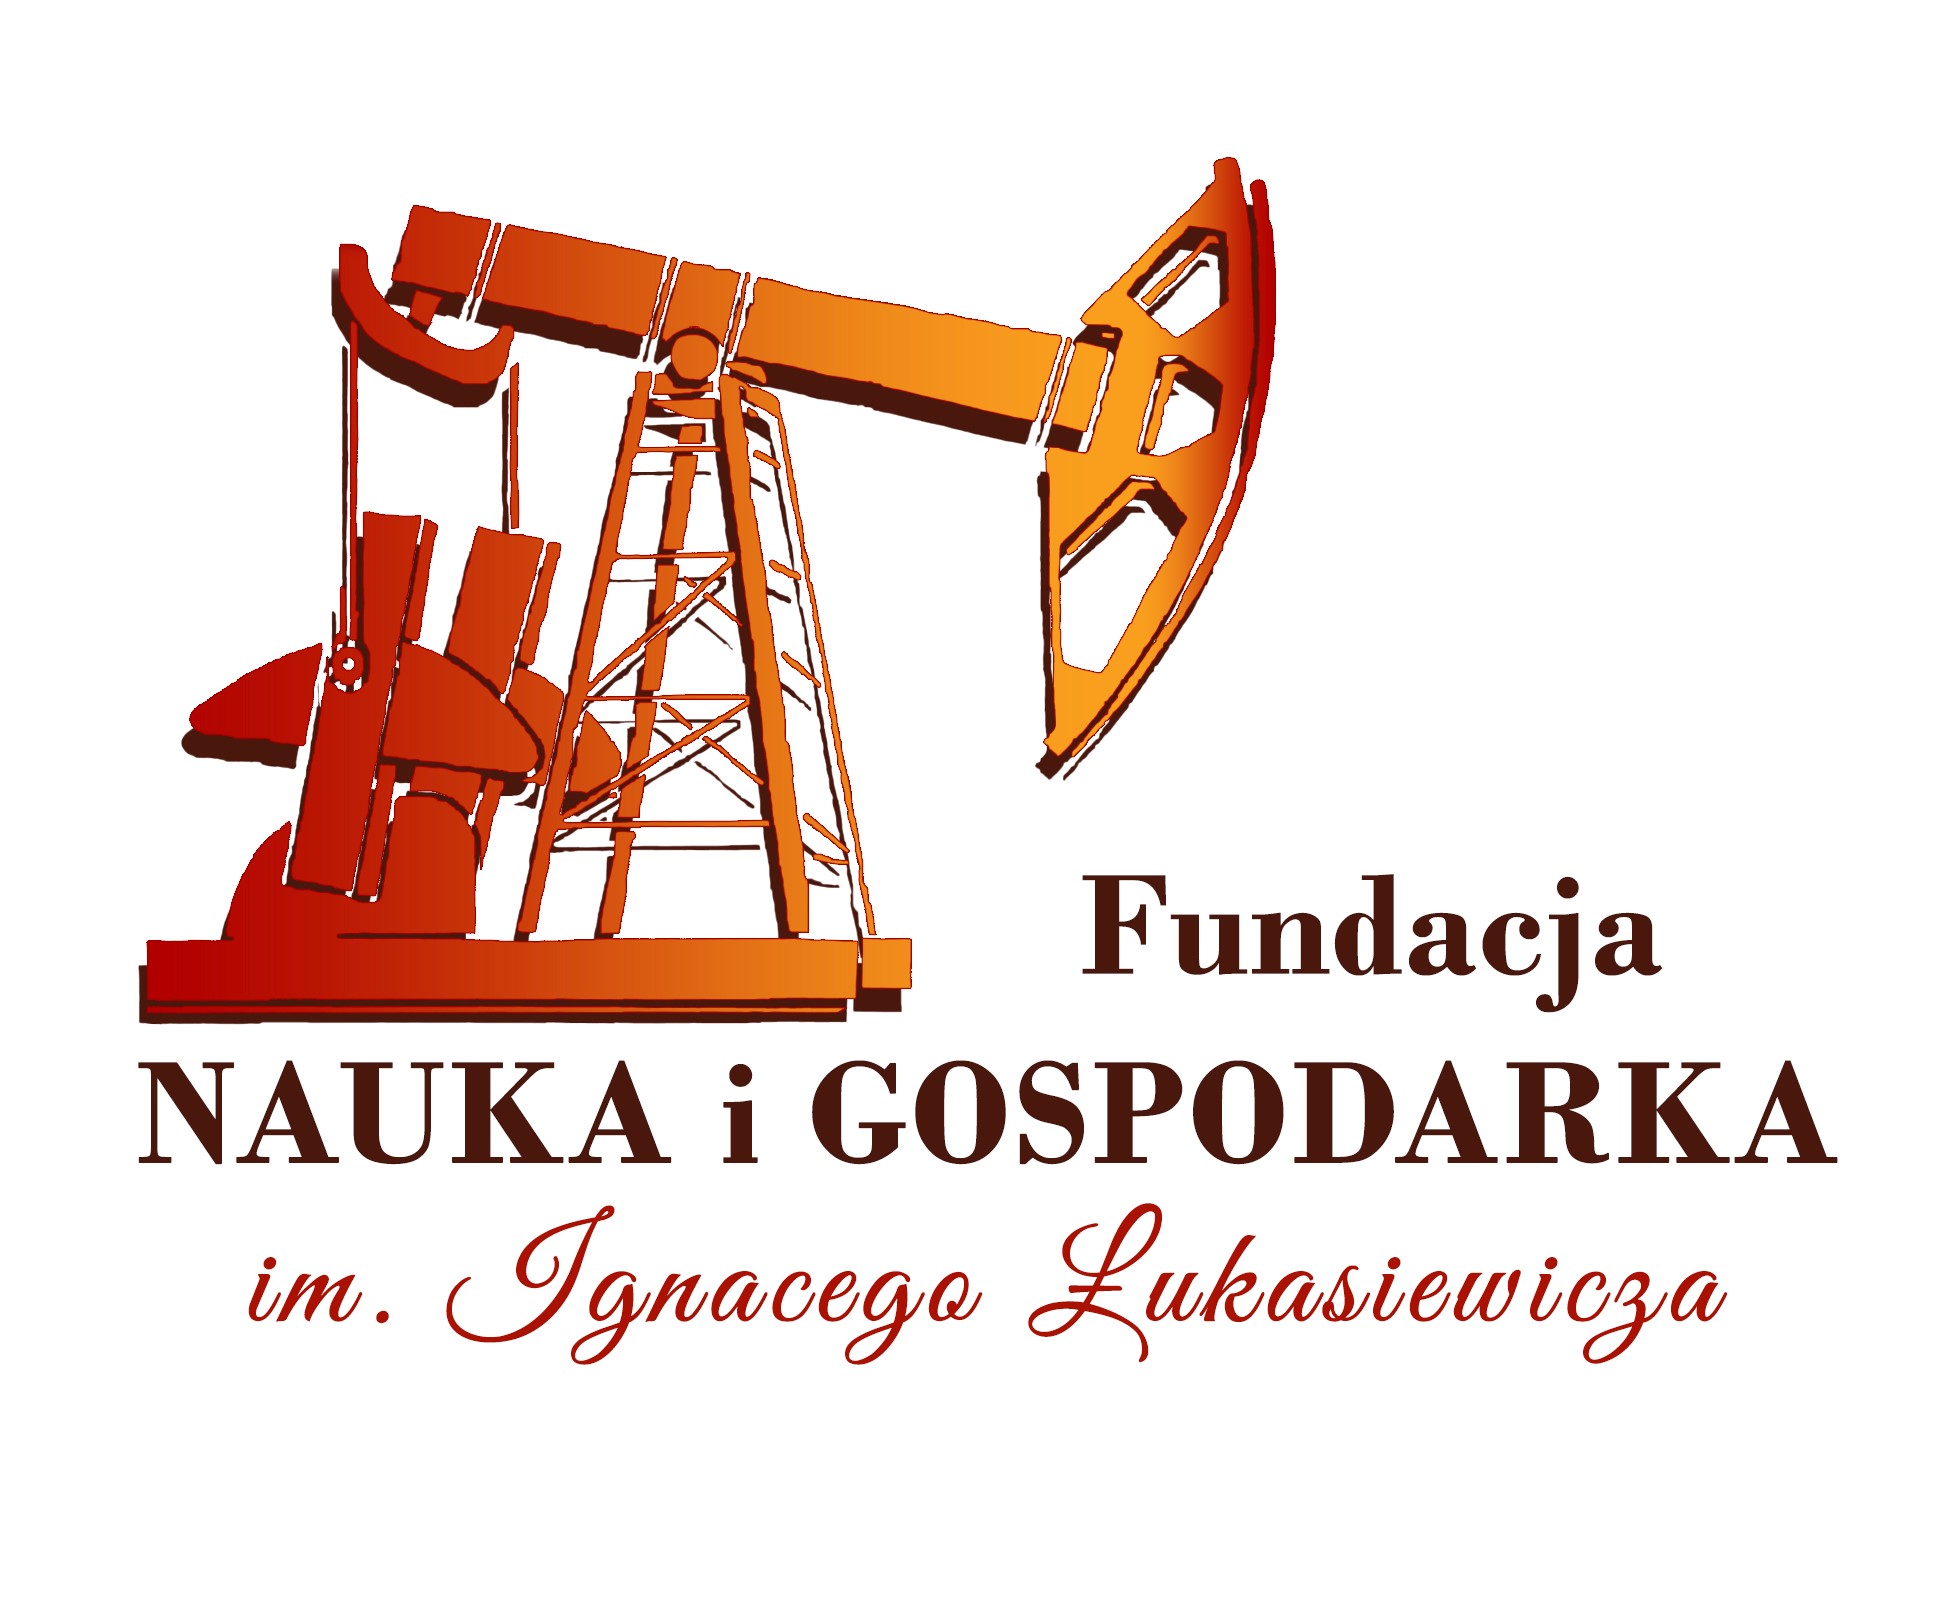 Fundacja Nauka i Gospodarka Łukasiewicza - logo